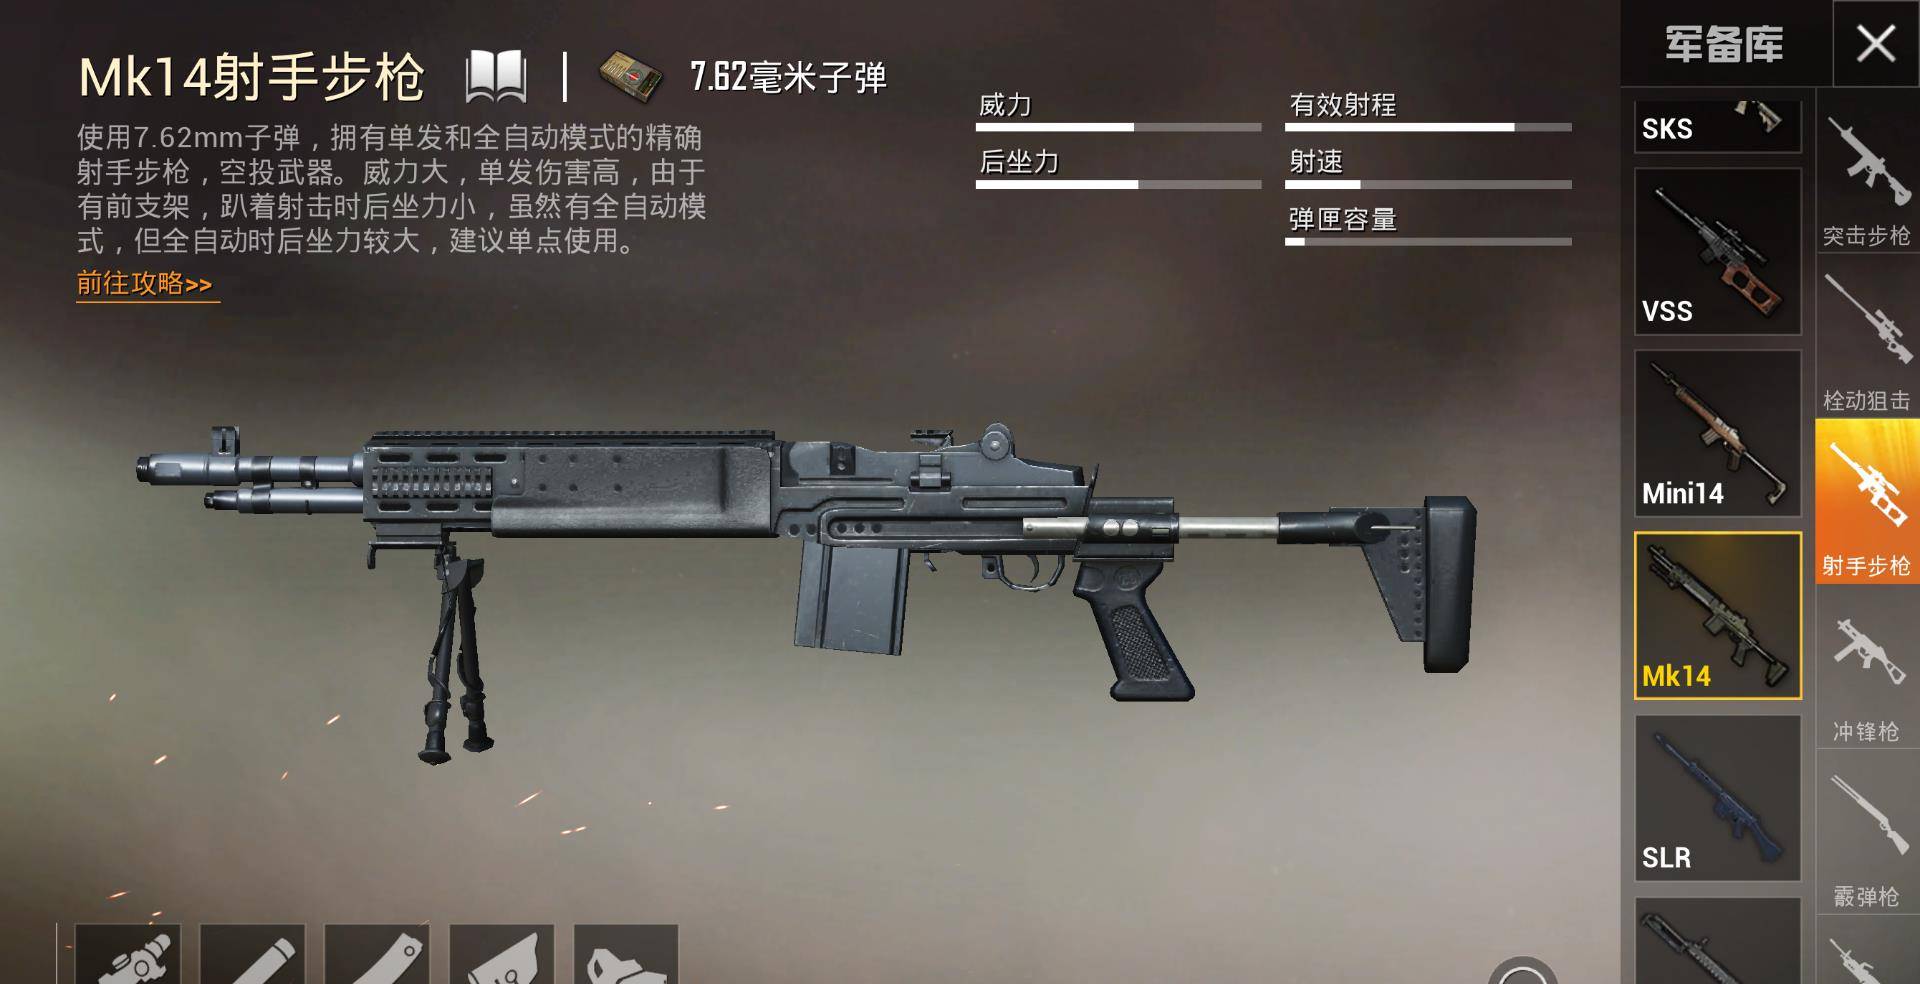 原创和平精英:空投神器mk14,是否是最强射手步枪?